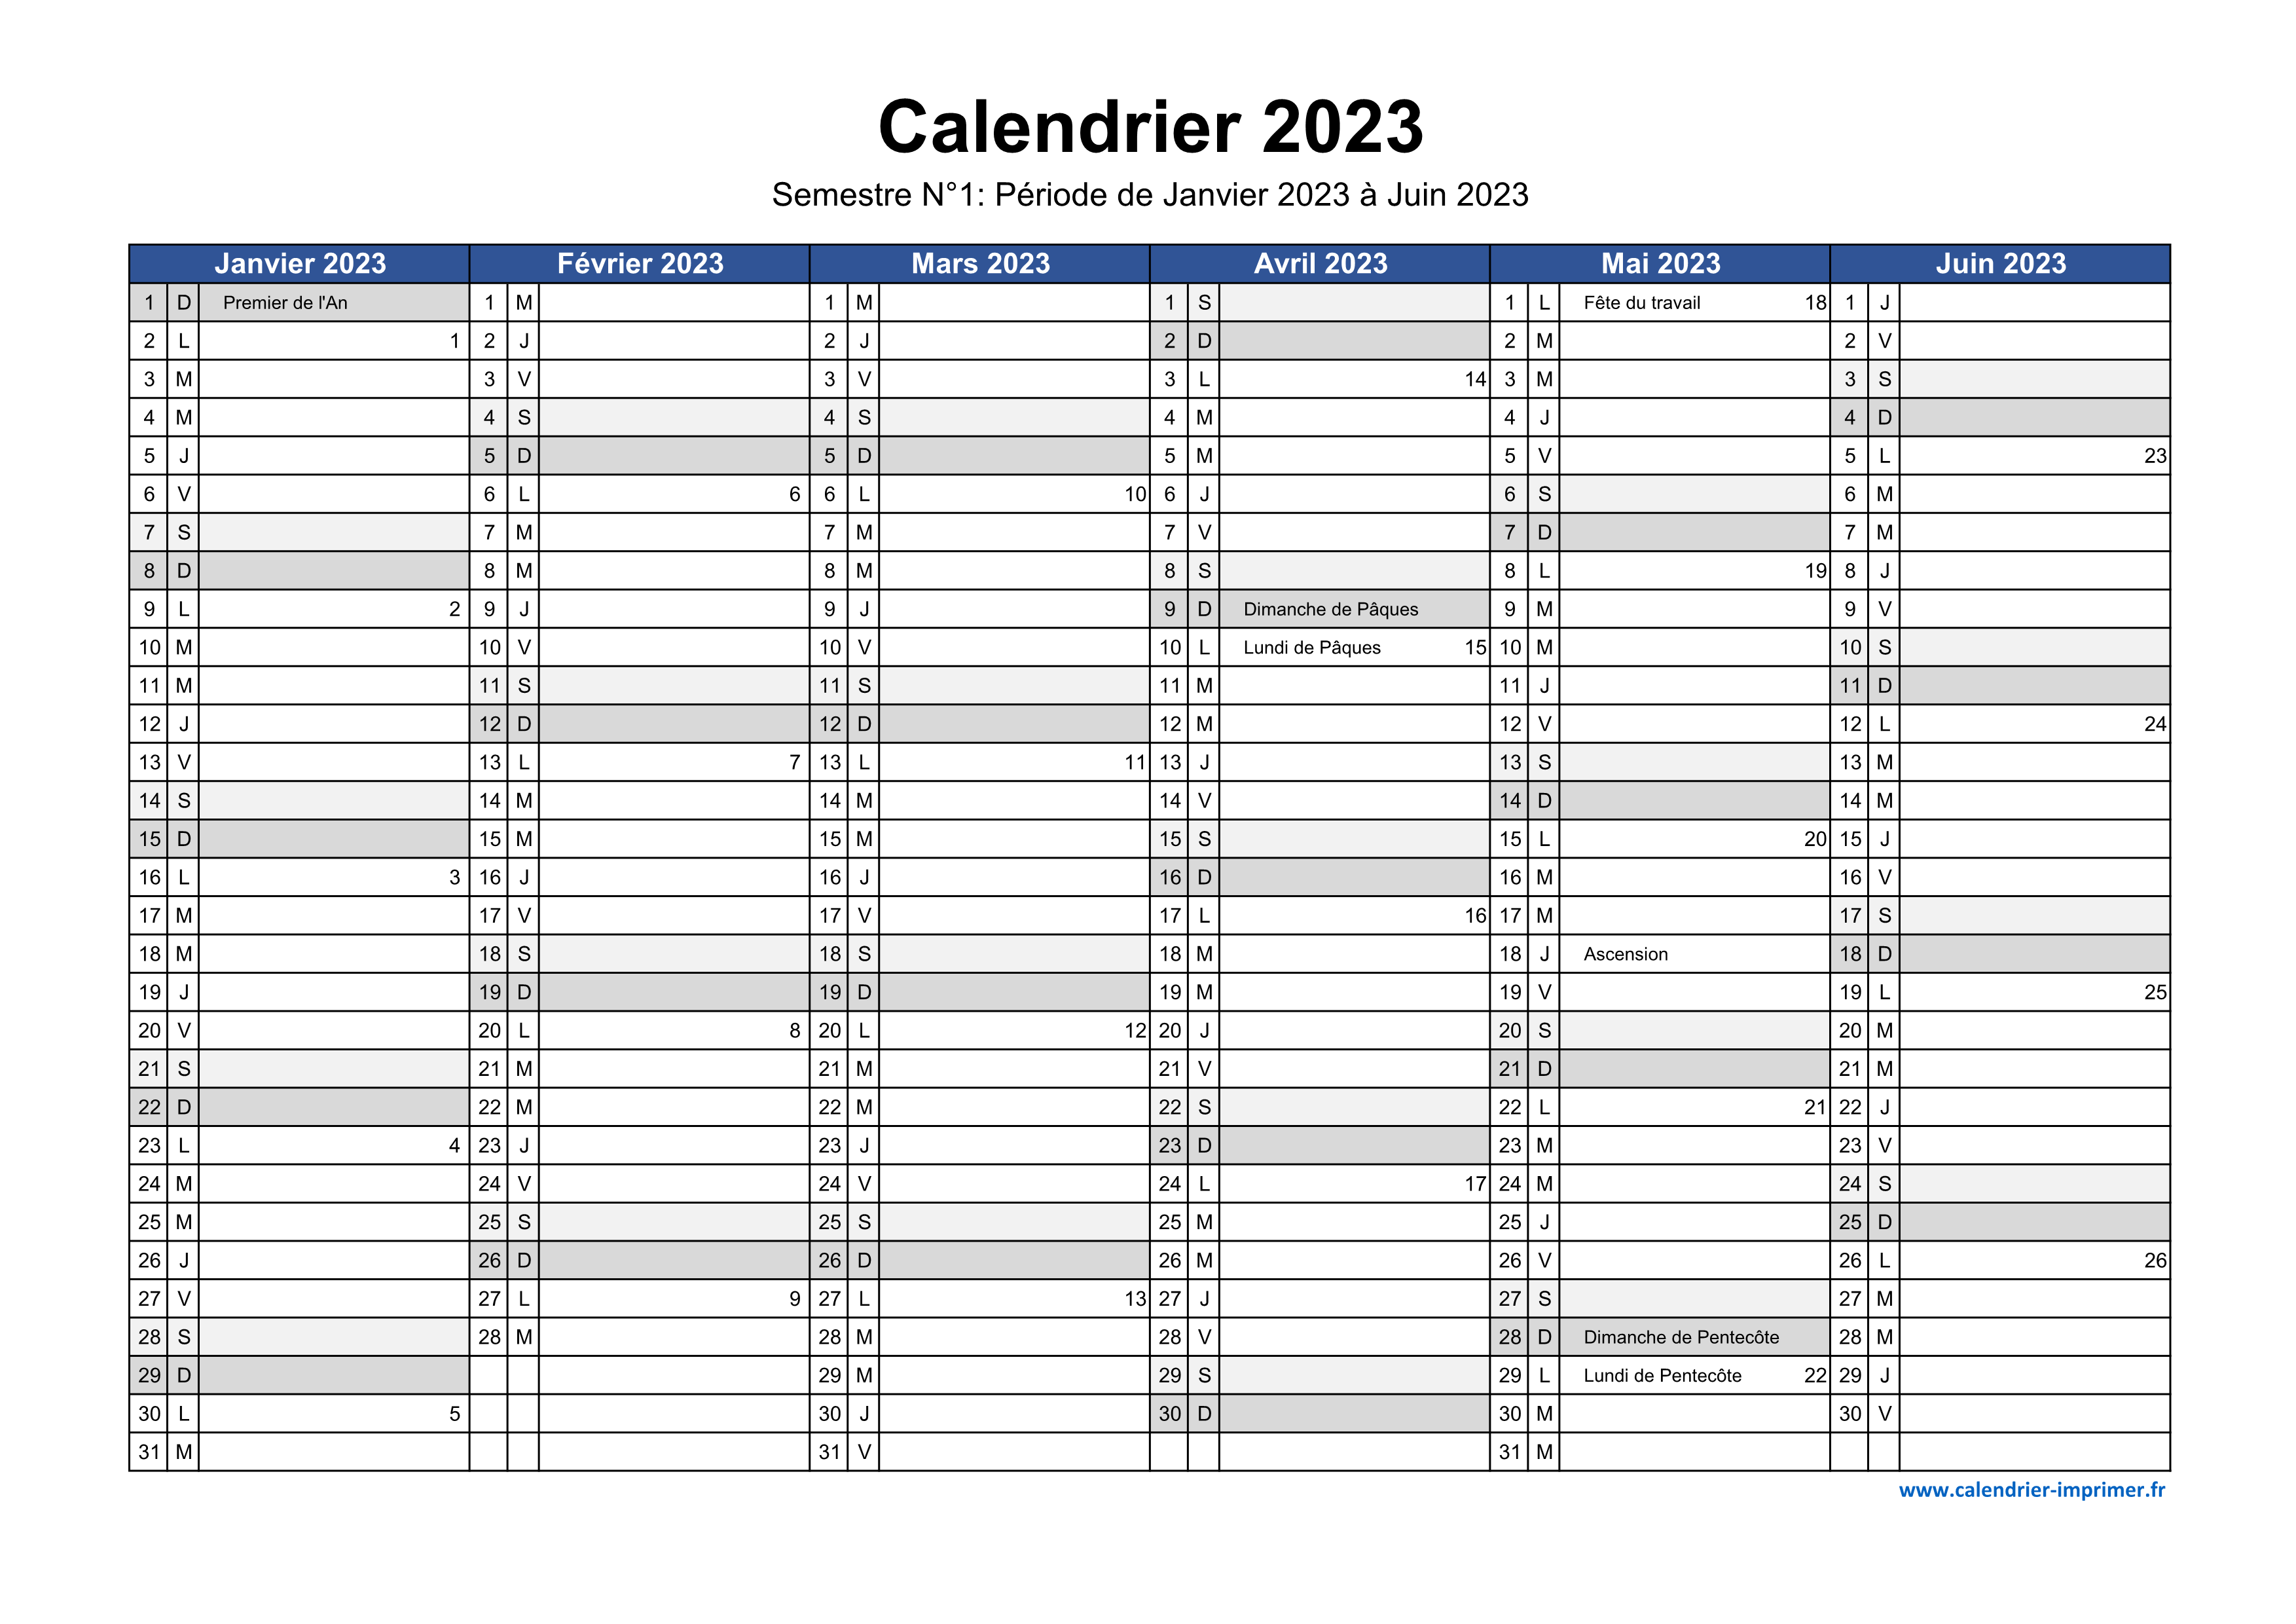 Calendrier semestriel 2023 à imprimer pour le 1er et le 2ème